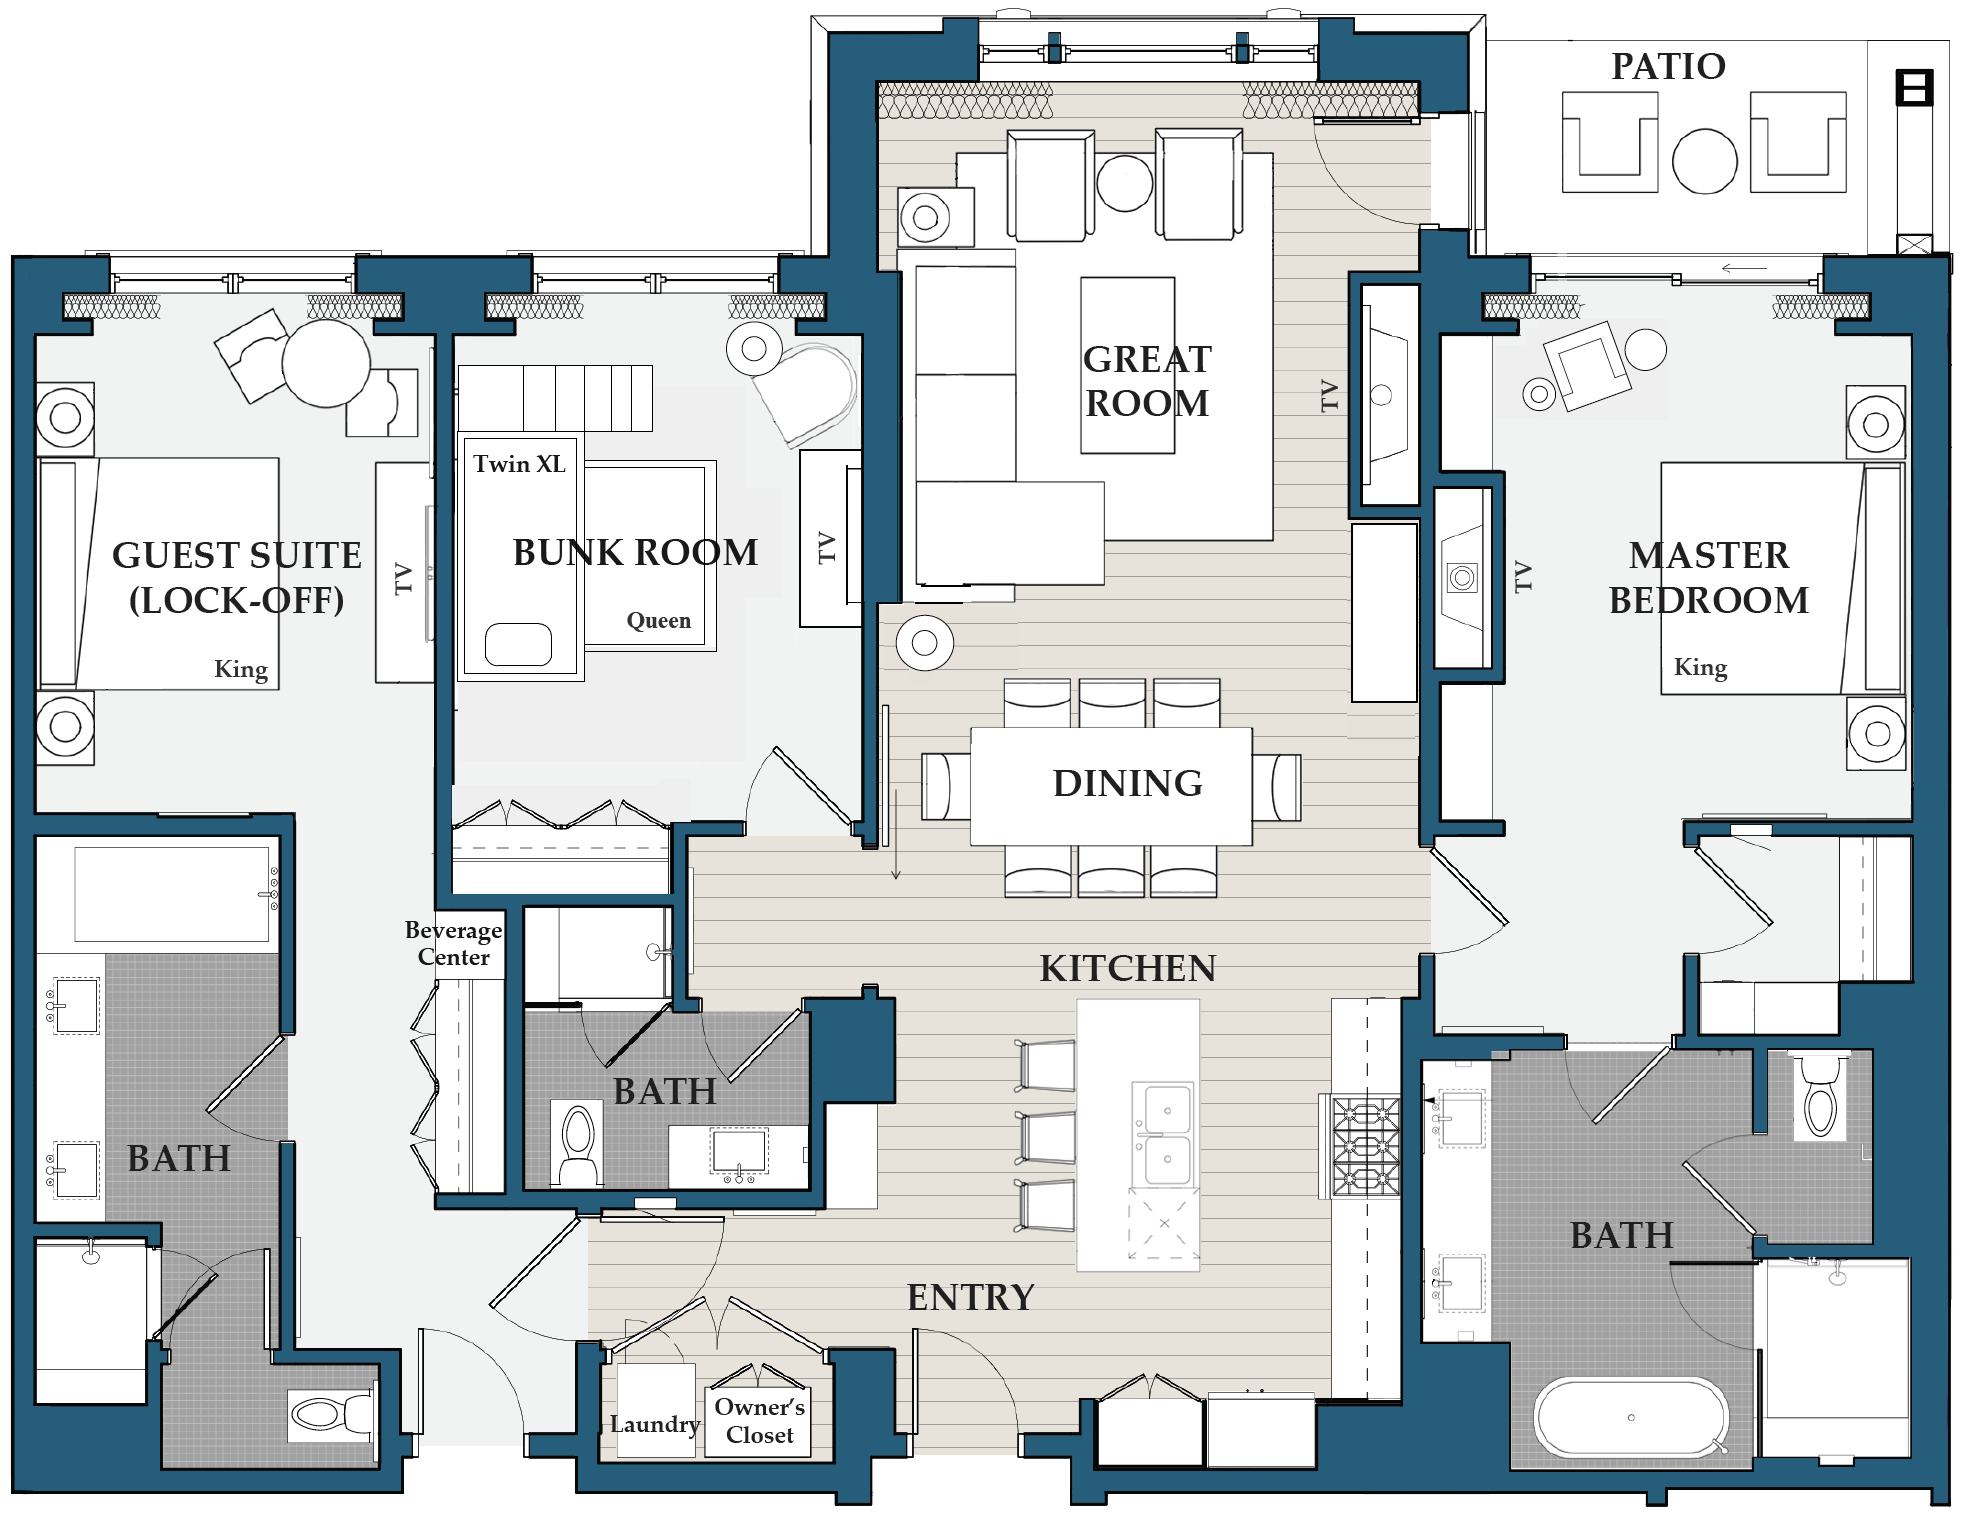 3-bedroom residence floor plan